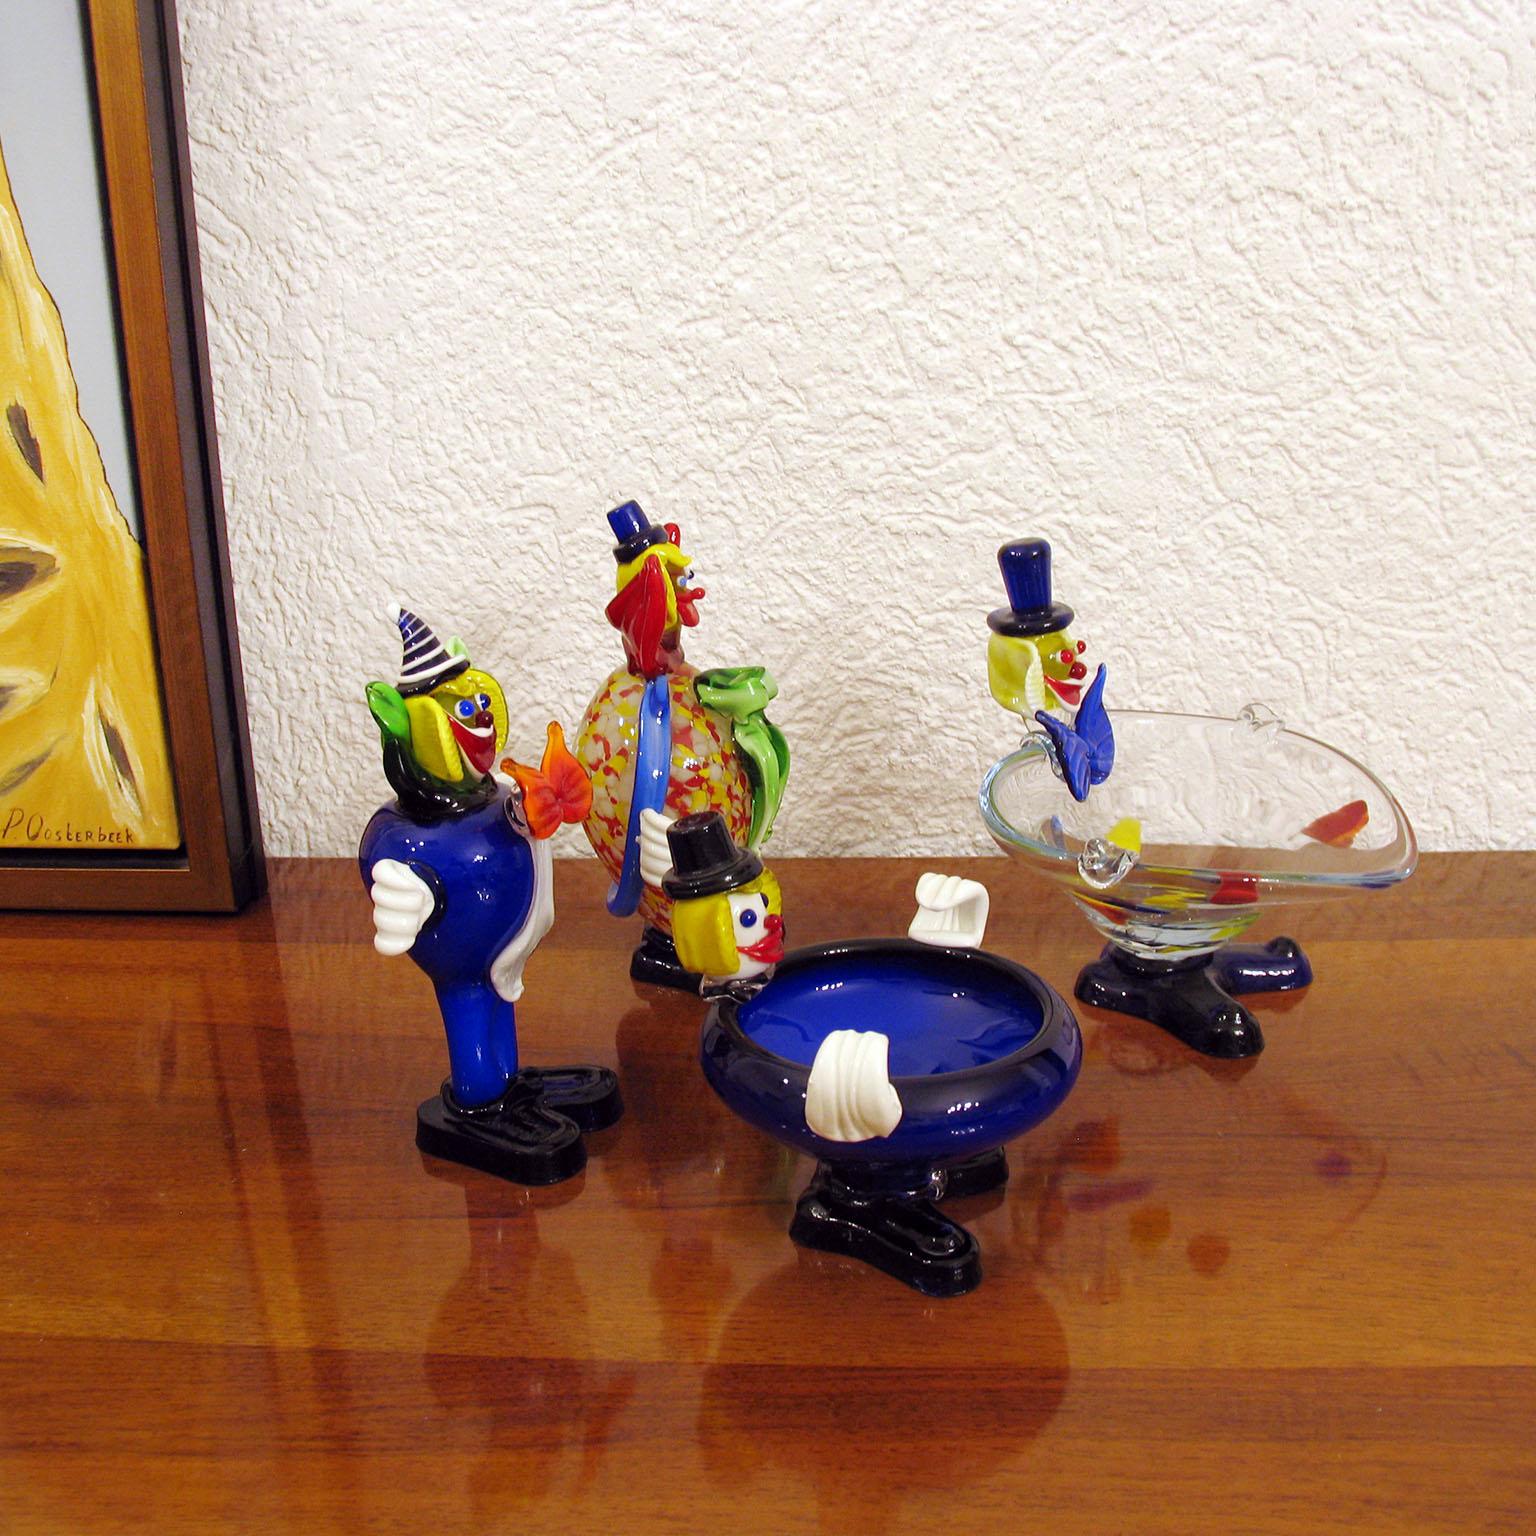 Fröhliche Clowns aus Muranoglas:: bunte Glaskörper:: lustige Gesichter:: zwei davon als Videopoche geformt:: was sie auch nützlich macht. Sie bringen einen Farbtupfer in jede Ecke Ihres Hauses!
Ausgezeichneter Zustand. 
Abmessungen: 
Großer dicker